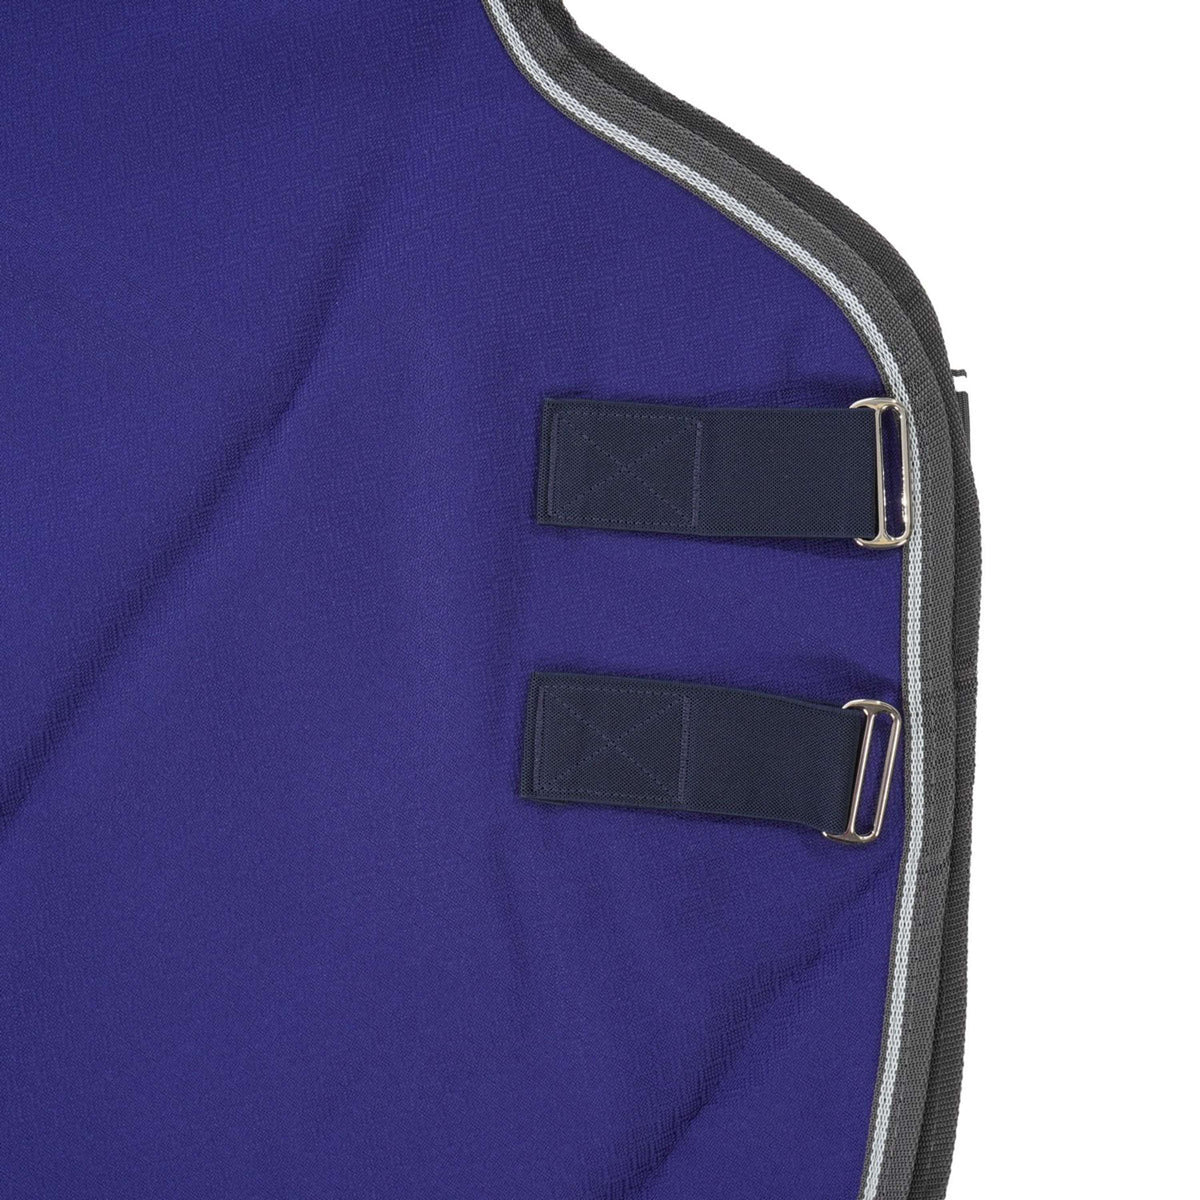 Weatherbeeta Couverture Imperméable Comfitec Premier Free Neck Rug Lite Bleu Foncé/Gris/Blanc